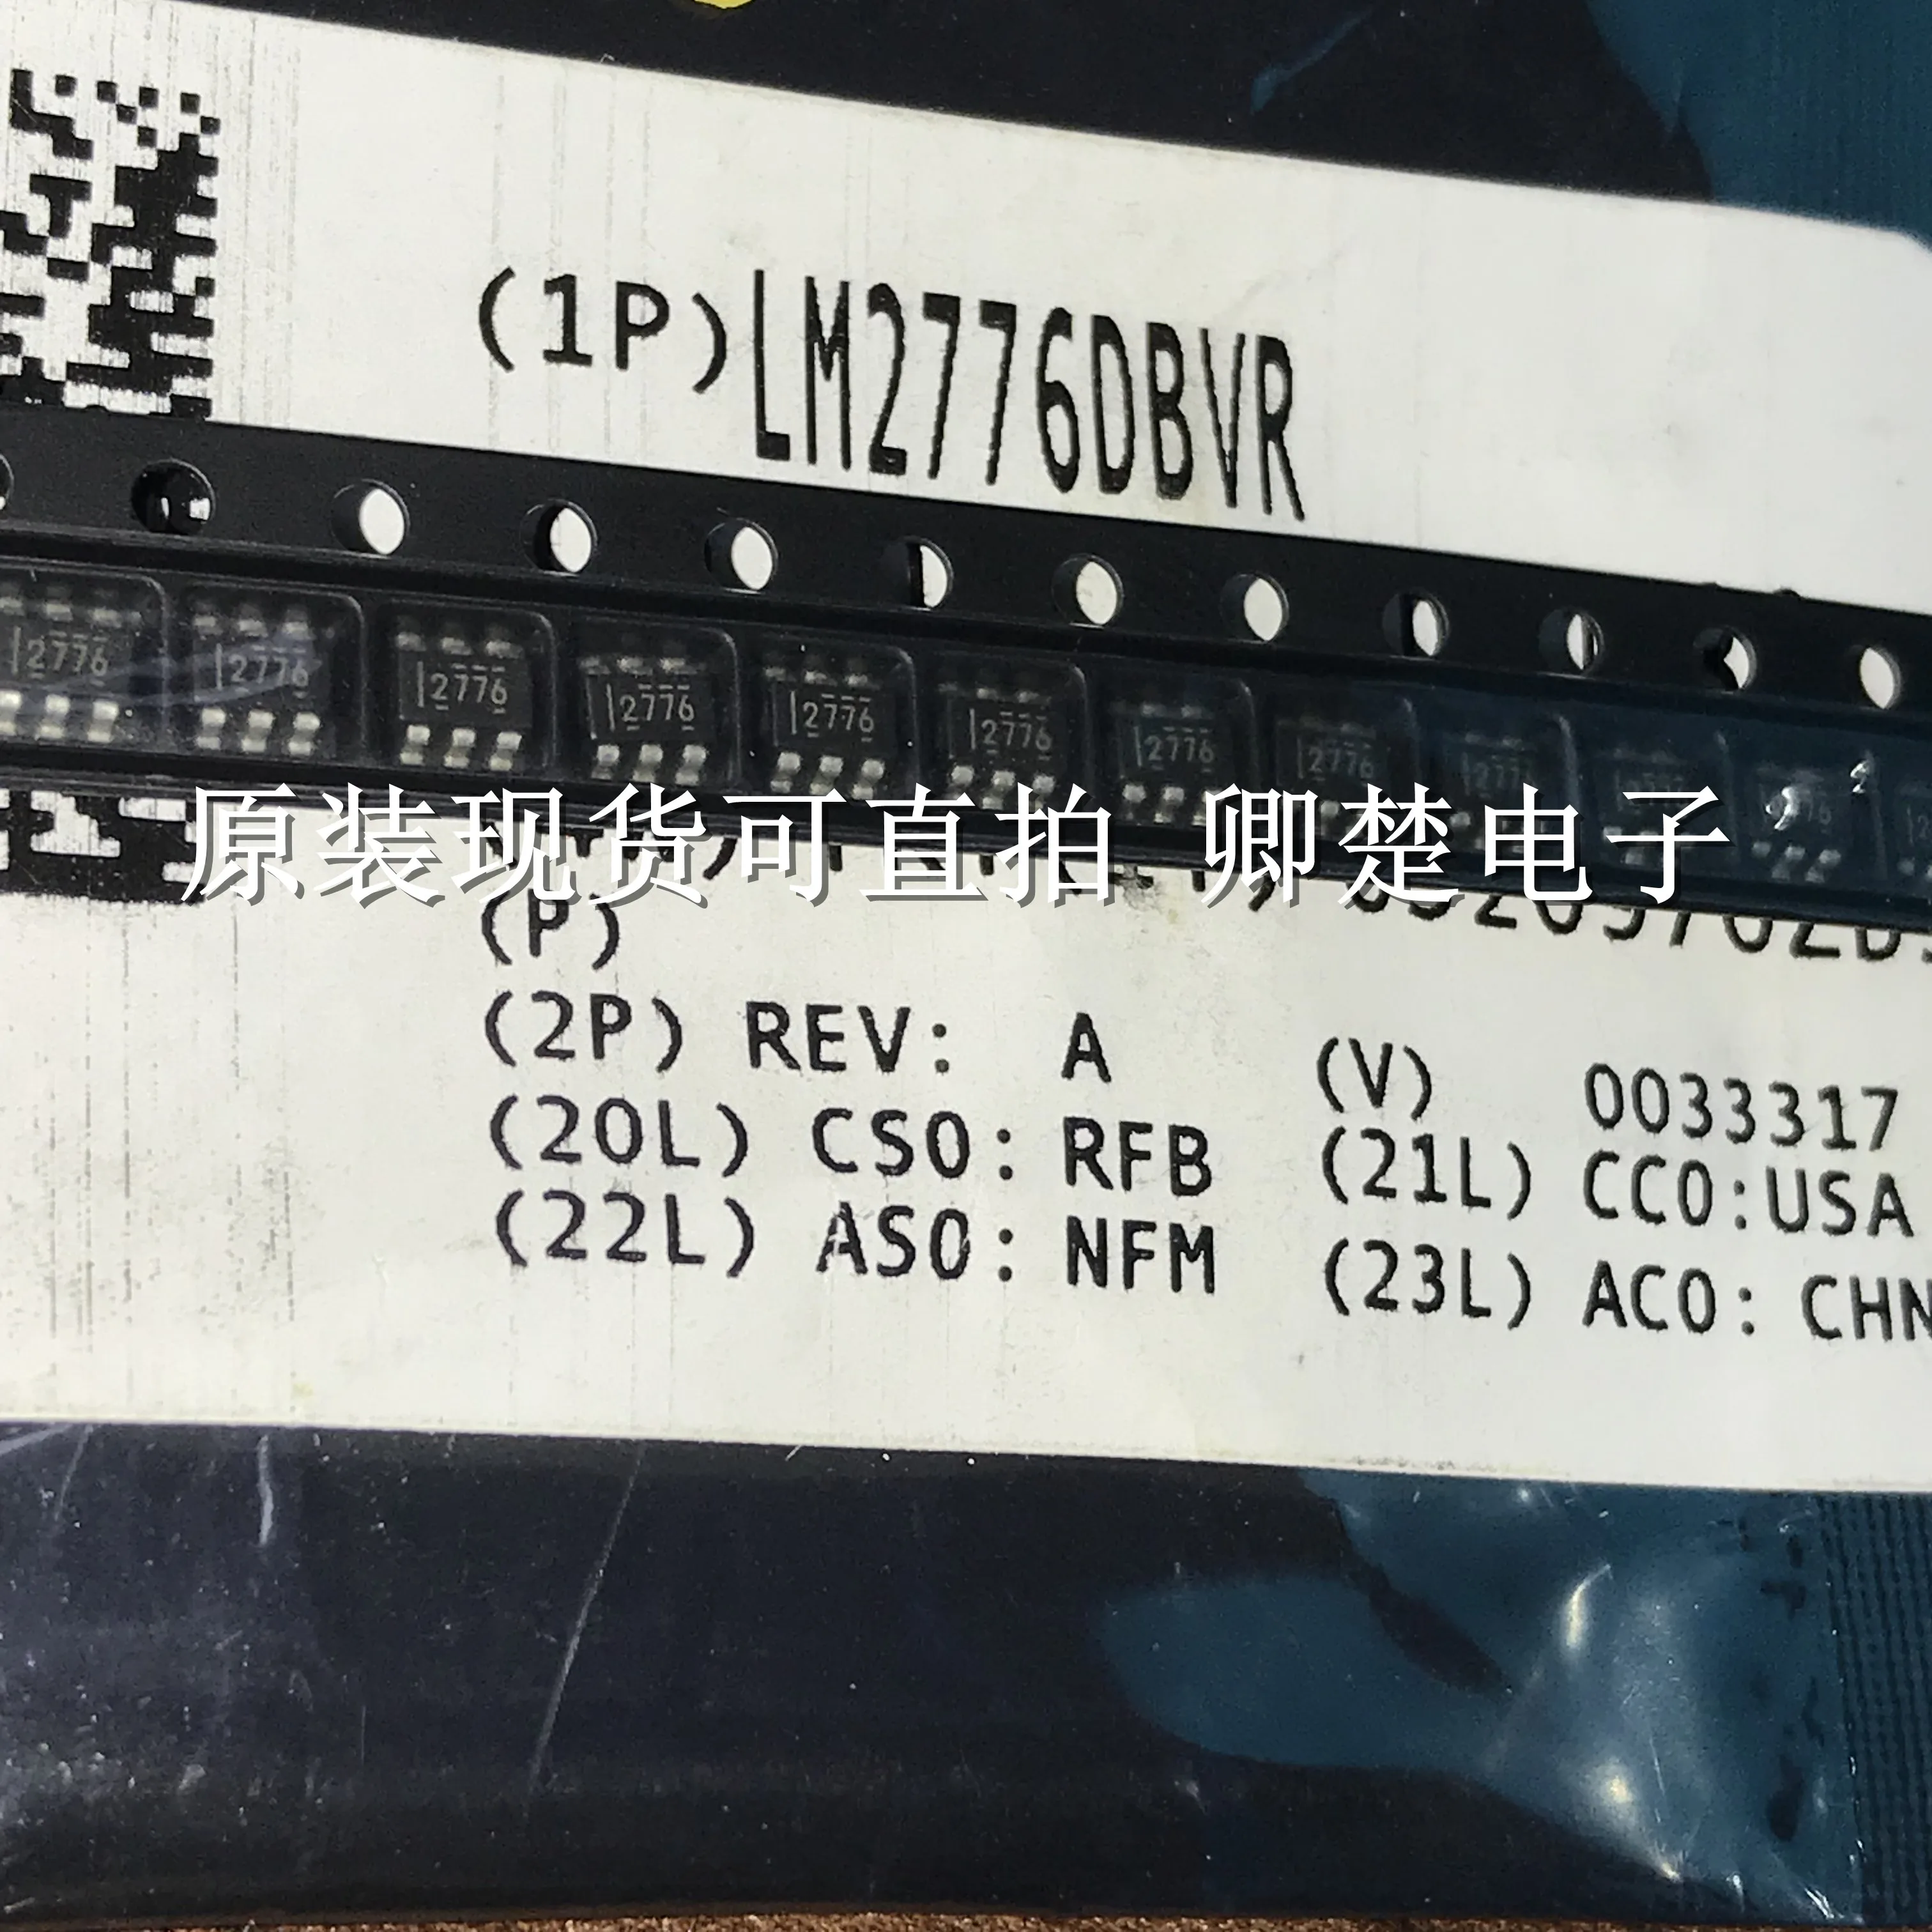 

30pcs original new LM2776DBVR SOT23-6 power management IC